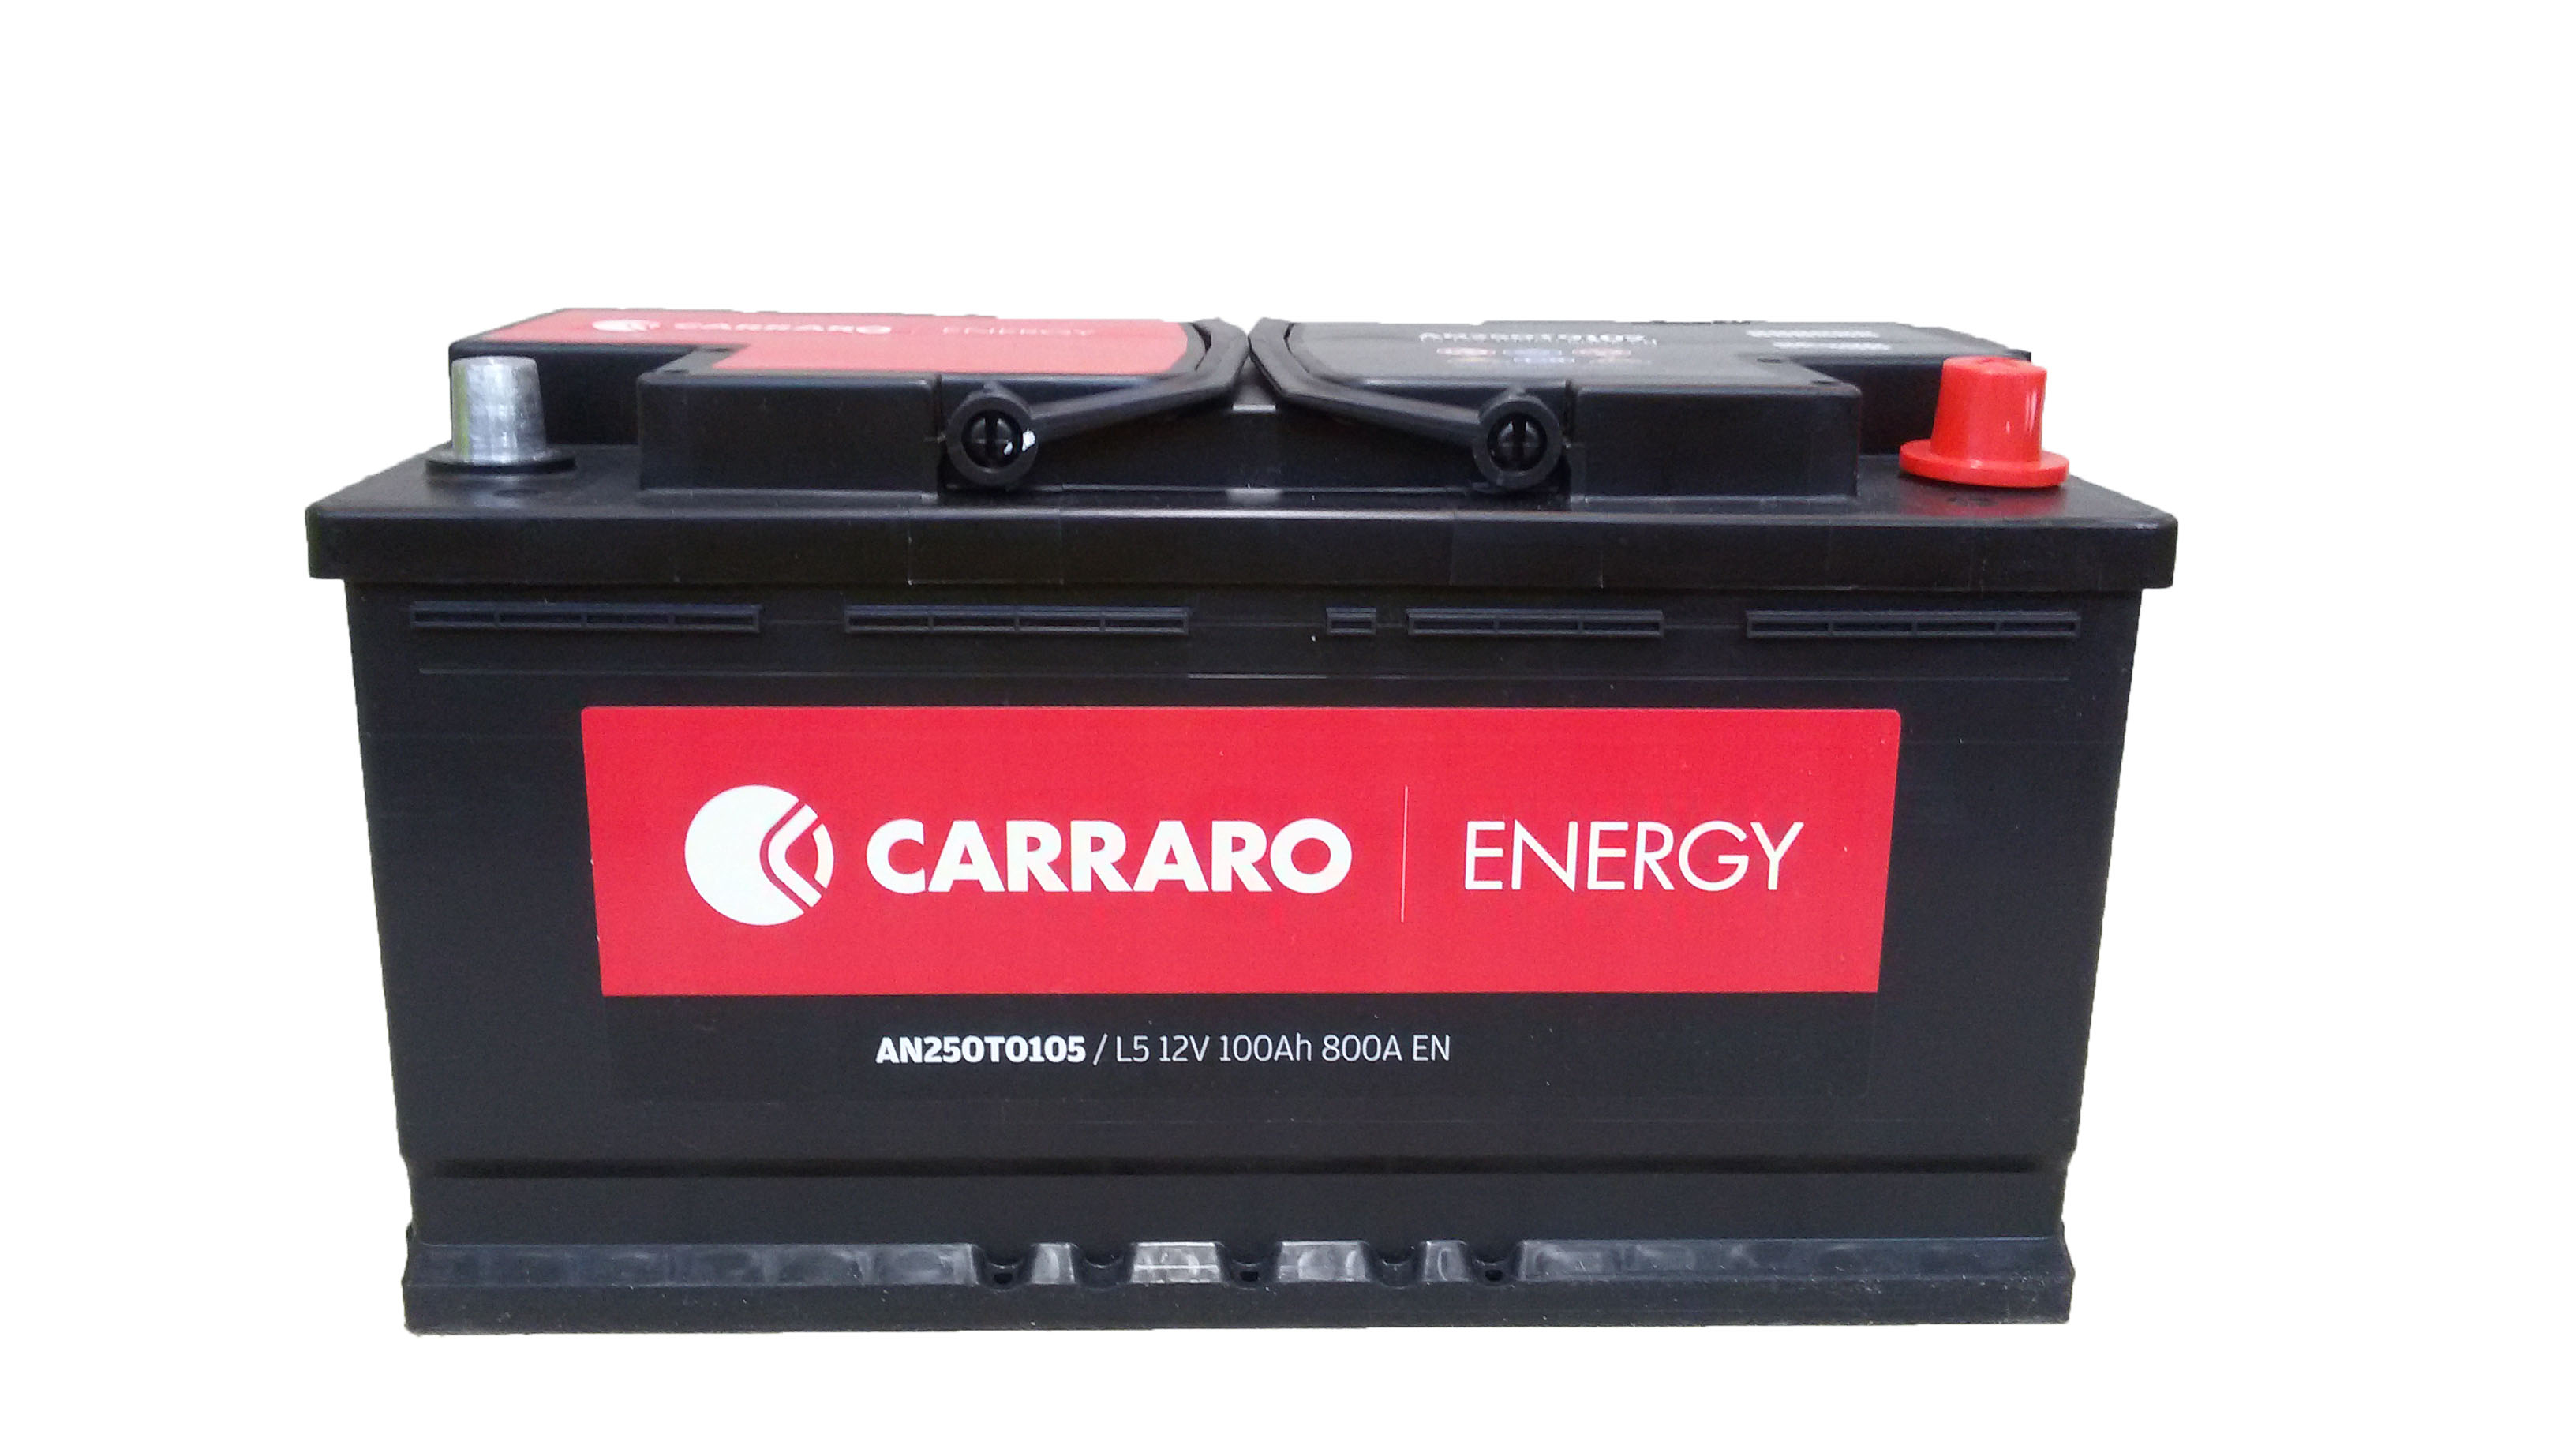 Carraro Energy starter batteries